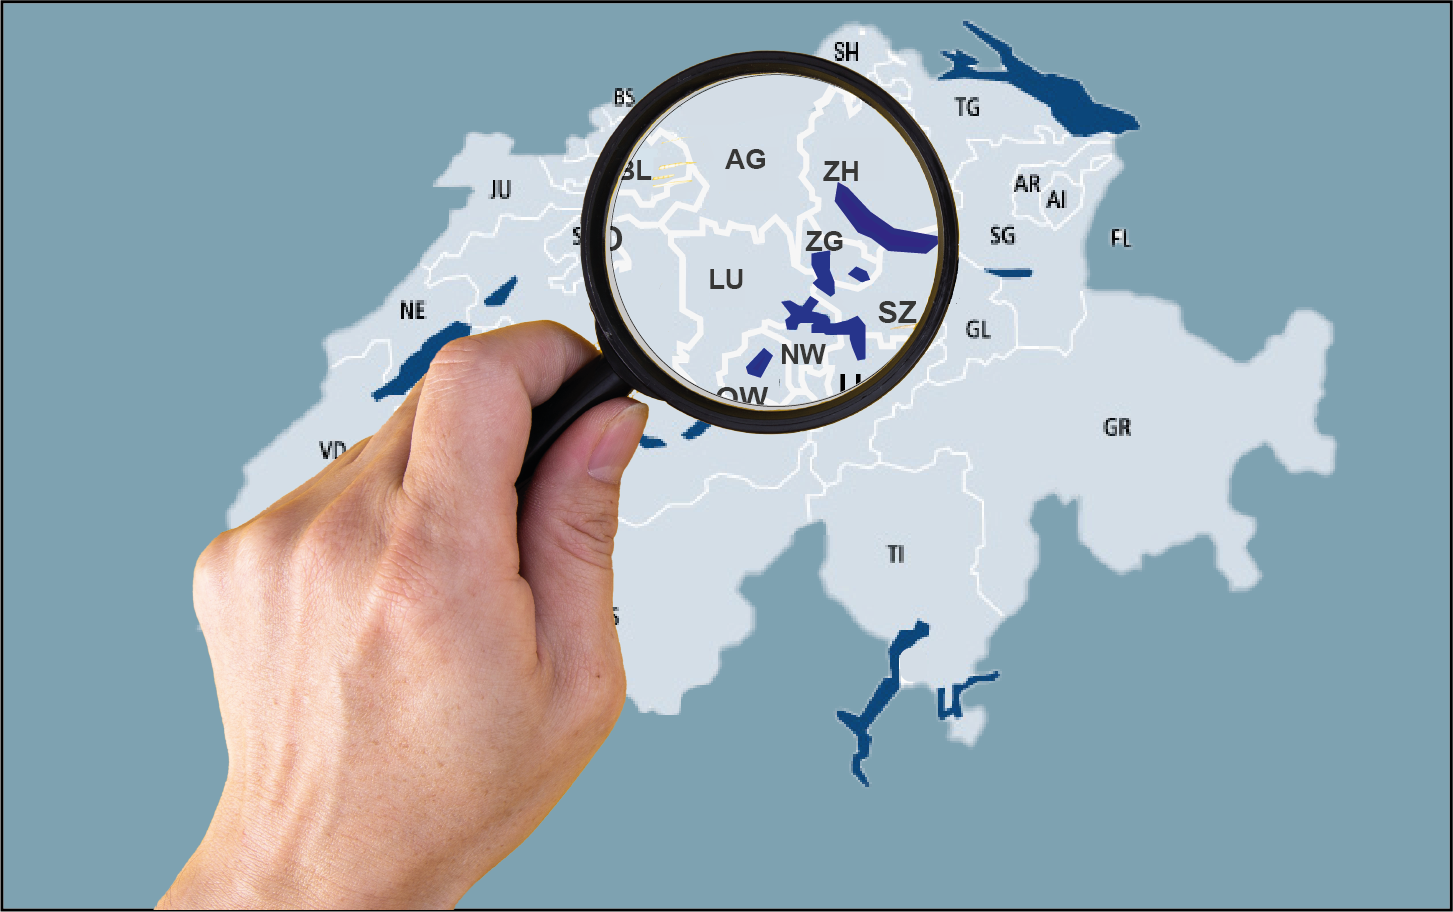 Mit einer Lupe wird auf eine Karte der Schweiz, die alle Kantone zeigt, geschaut.